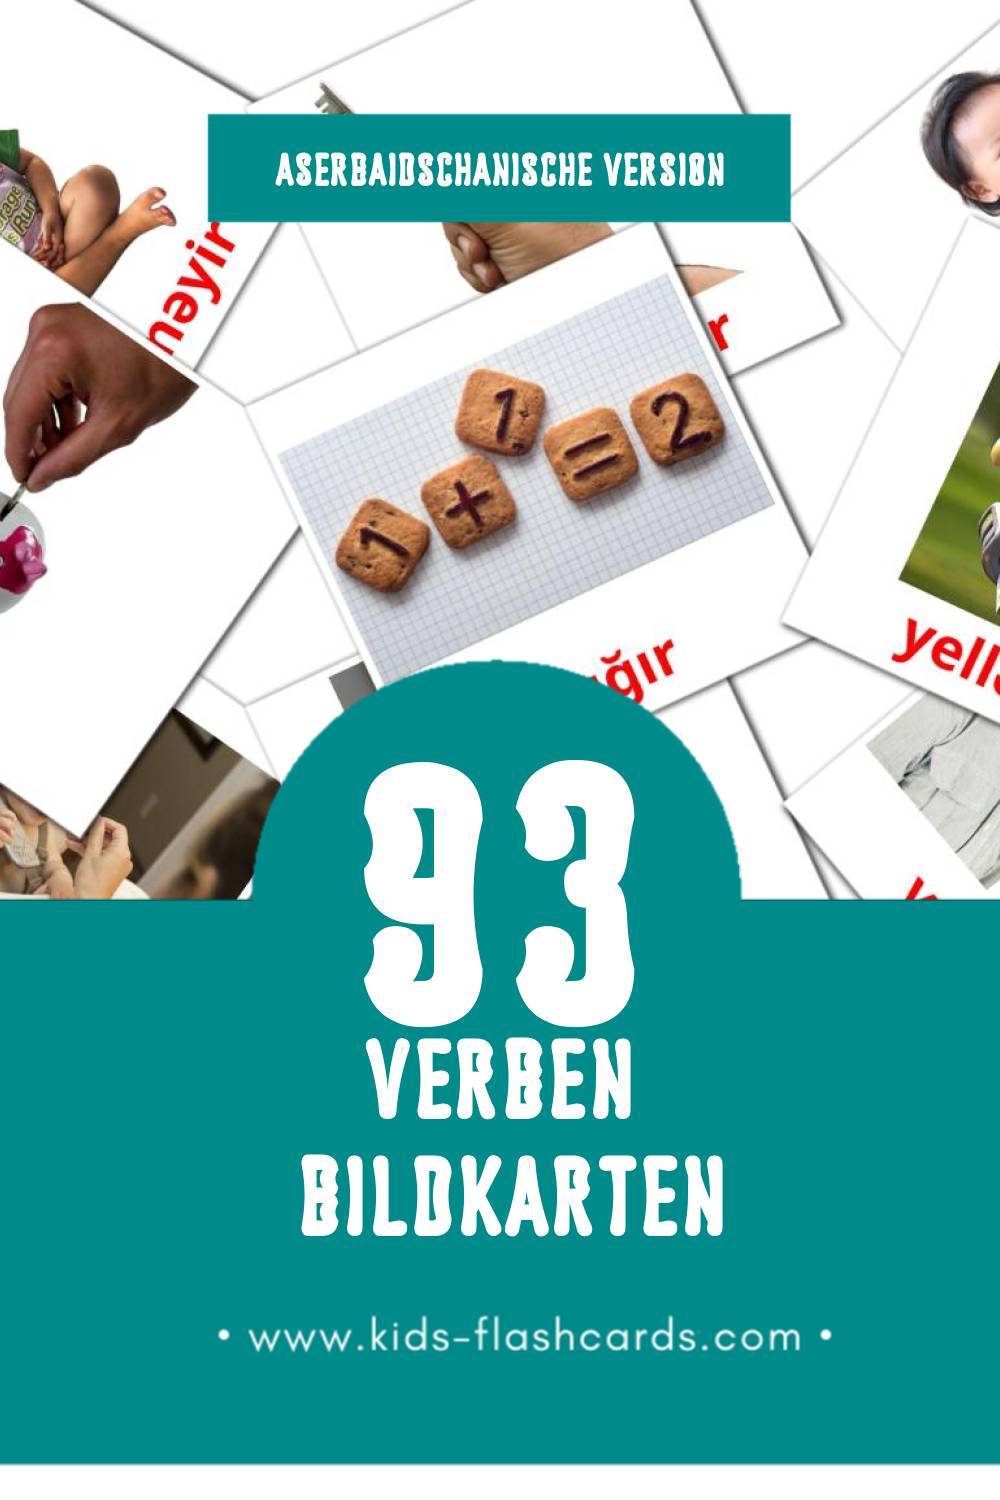 Visual Fellər Flashcards für Kleinkinder (93 Karten in Aserbaidschanisch)